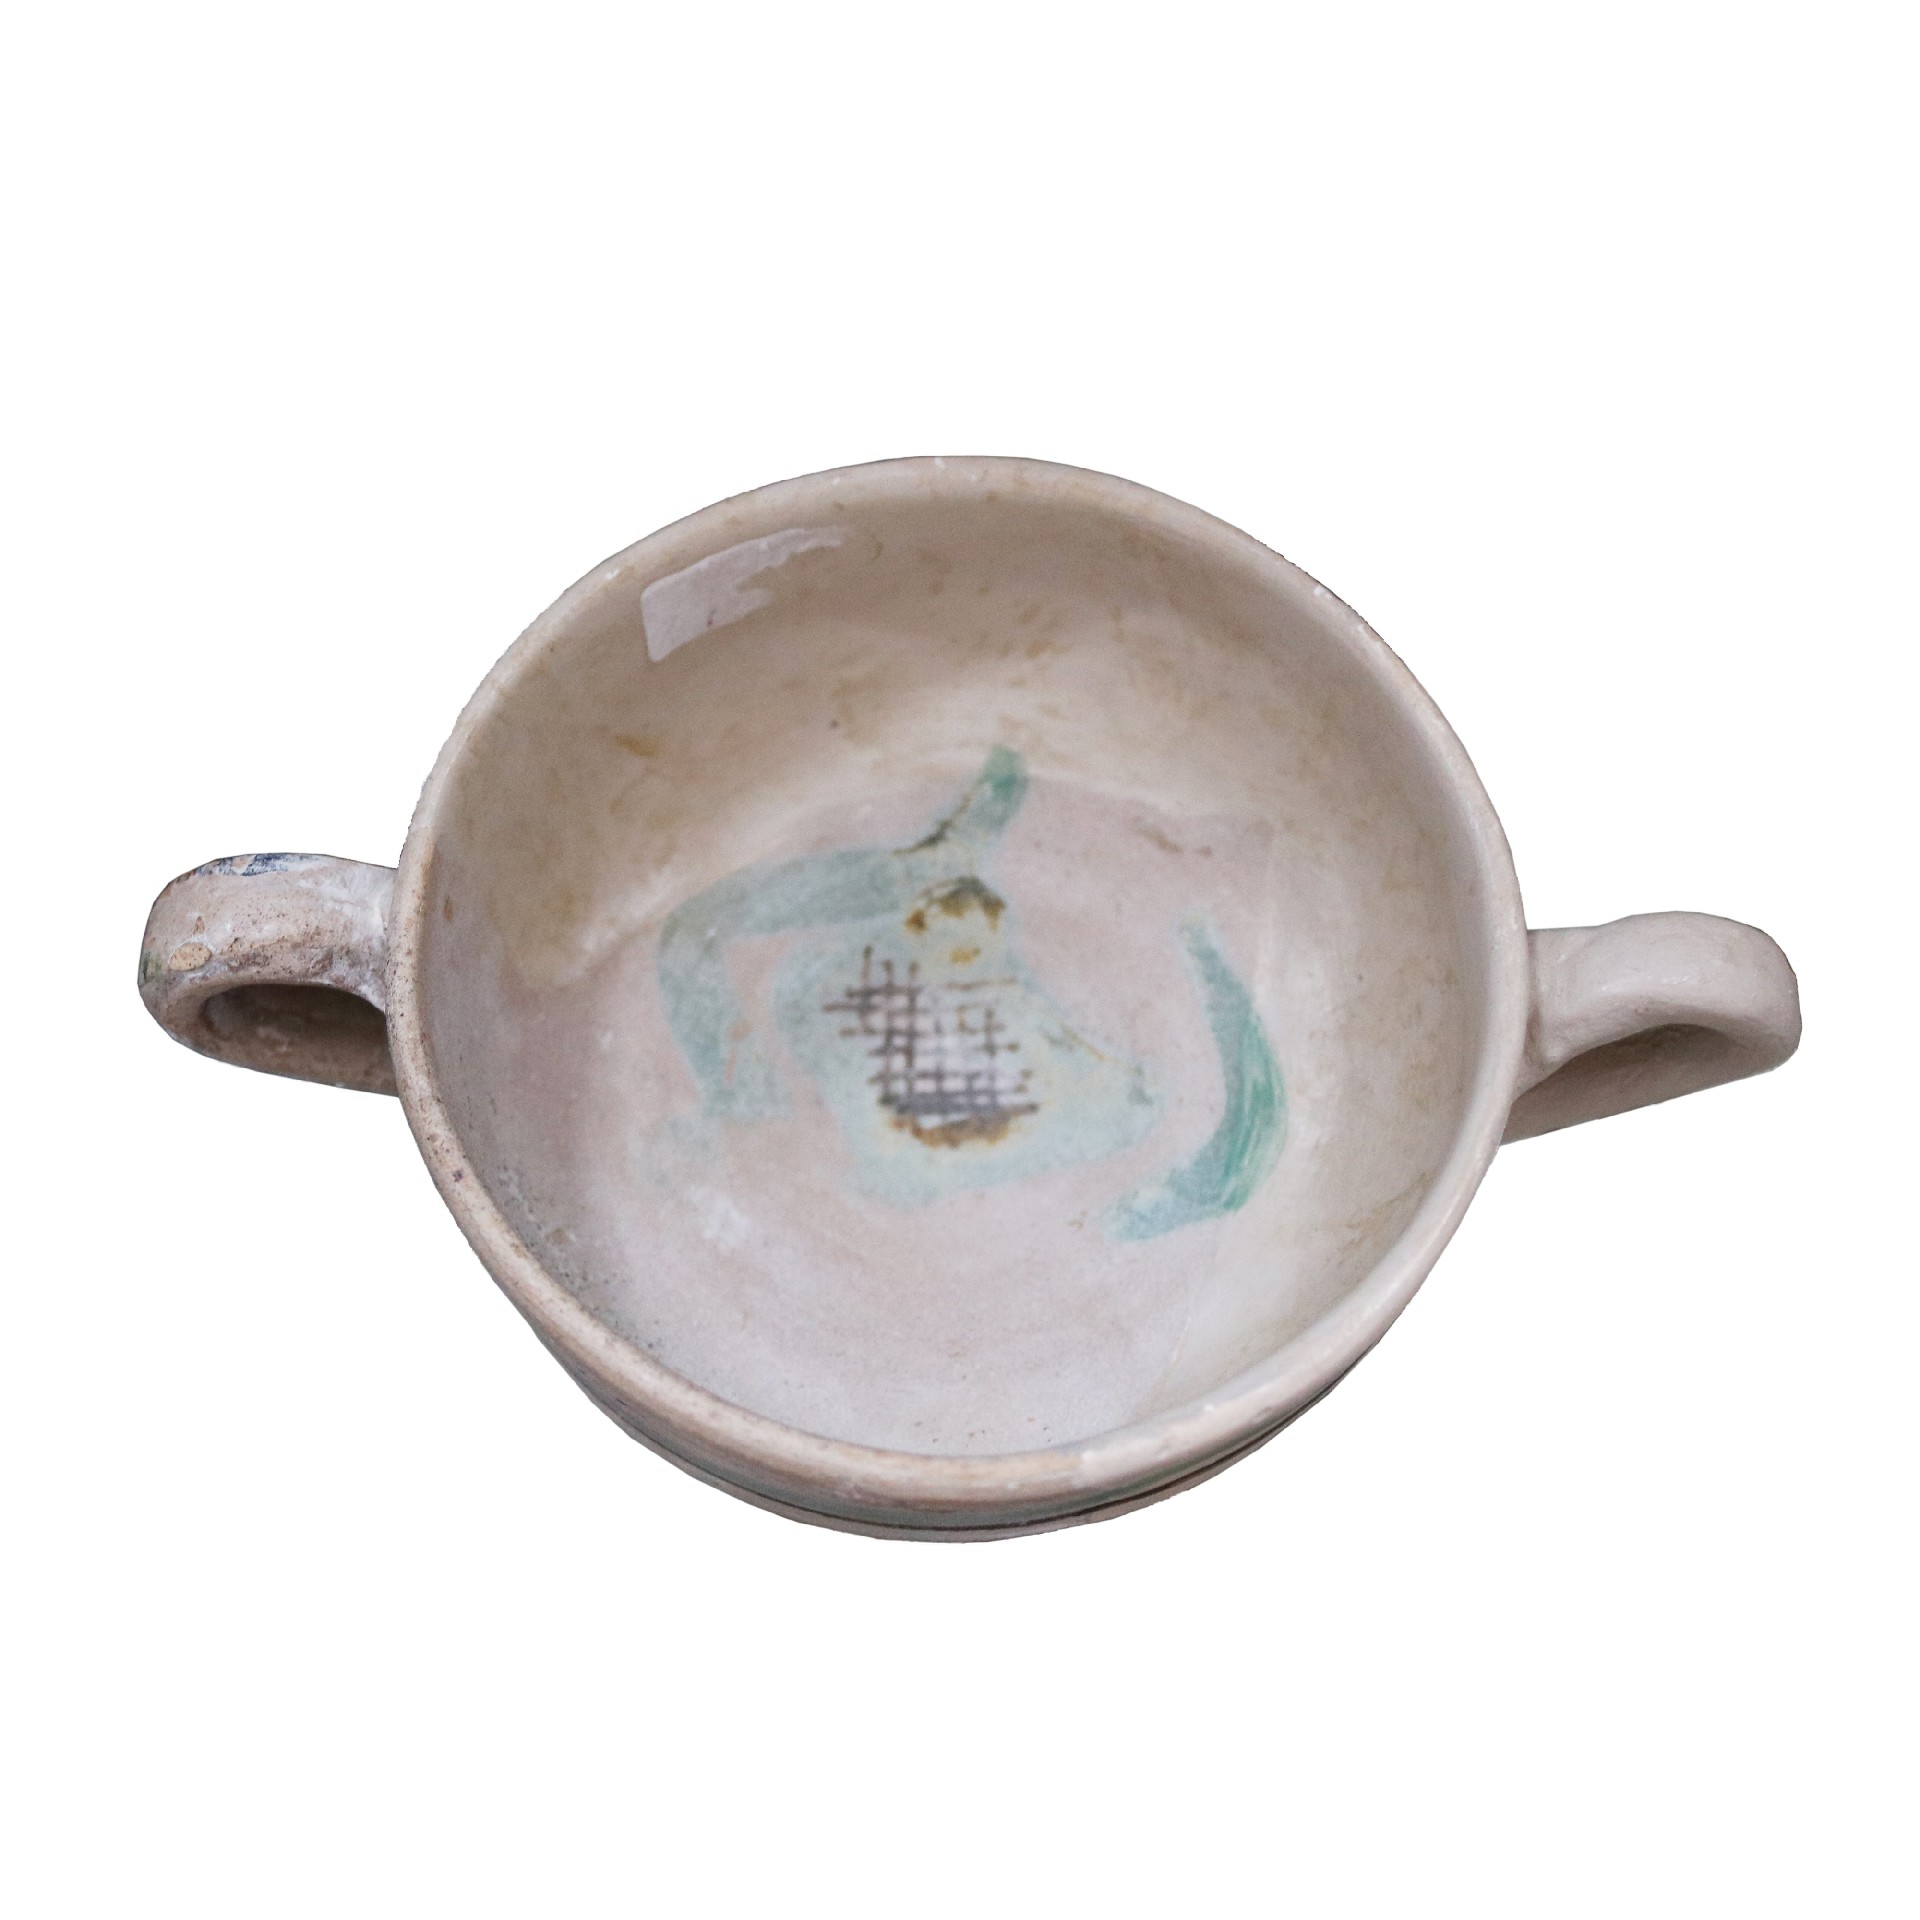 Antica ciotola in maiolica. Epoca XIV secolo. - Ceramiche - Oggettistica - Prodotti - Antichità Fiorillo